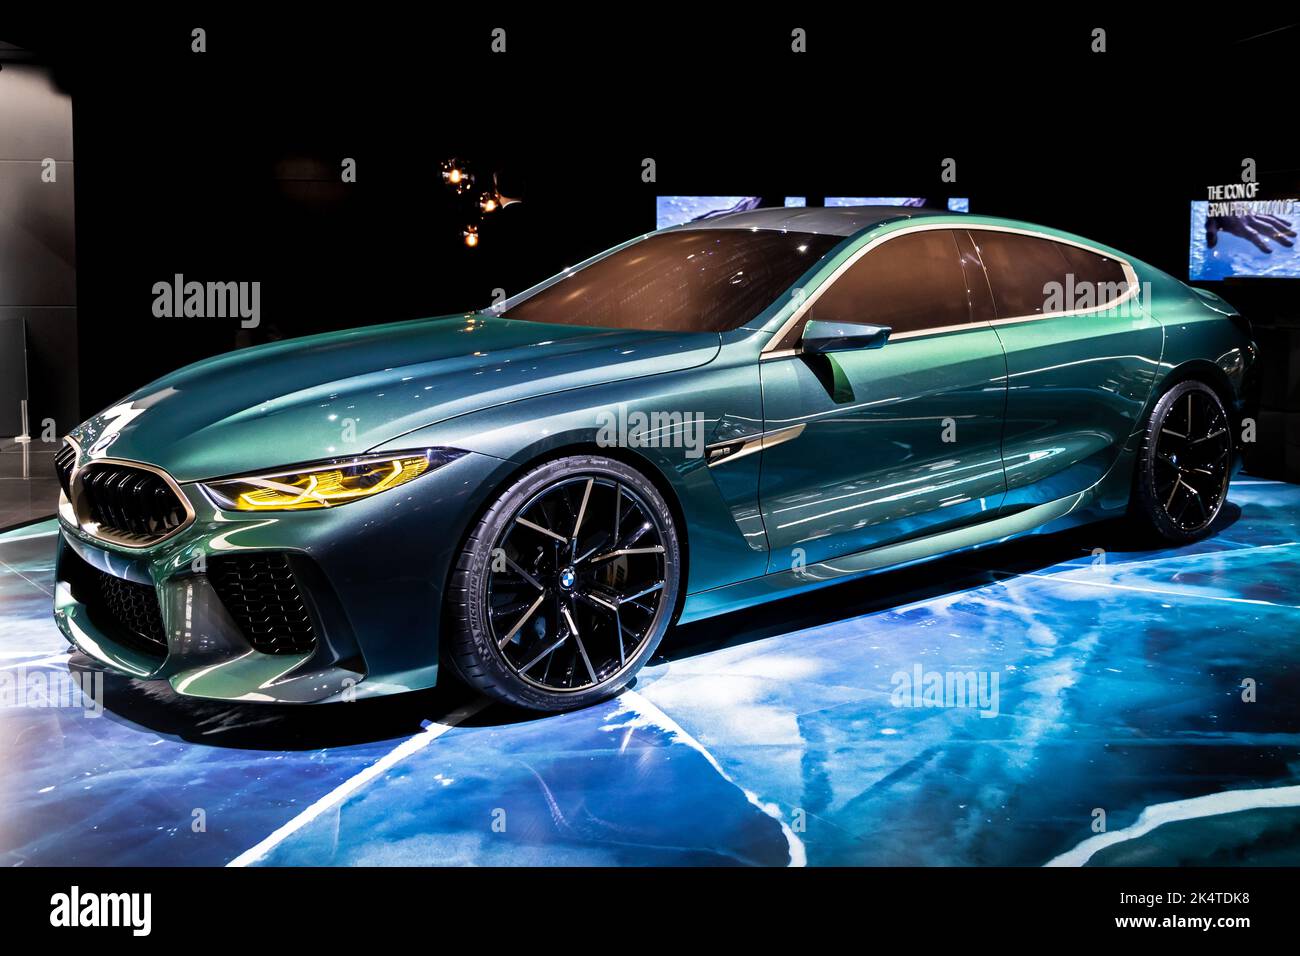 Der Sportwagen BMW M8 Gran Coupe wurde auf dem 88. Internationalen Automobilsalon in Genf präsentiert. Schweiz - 7. März 2018 Stockfoto